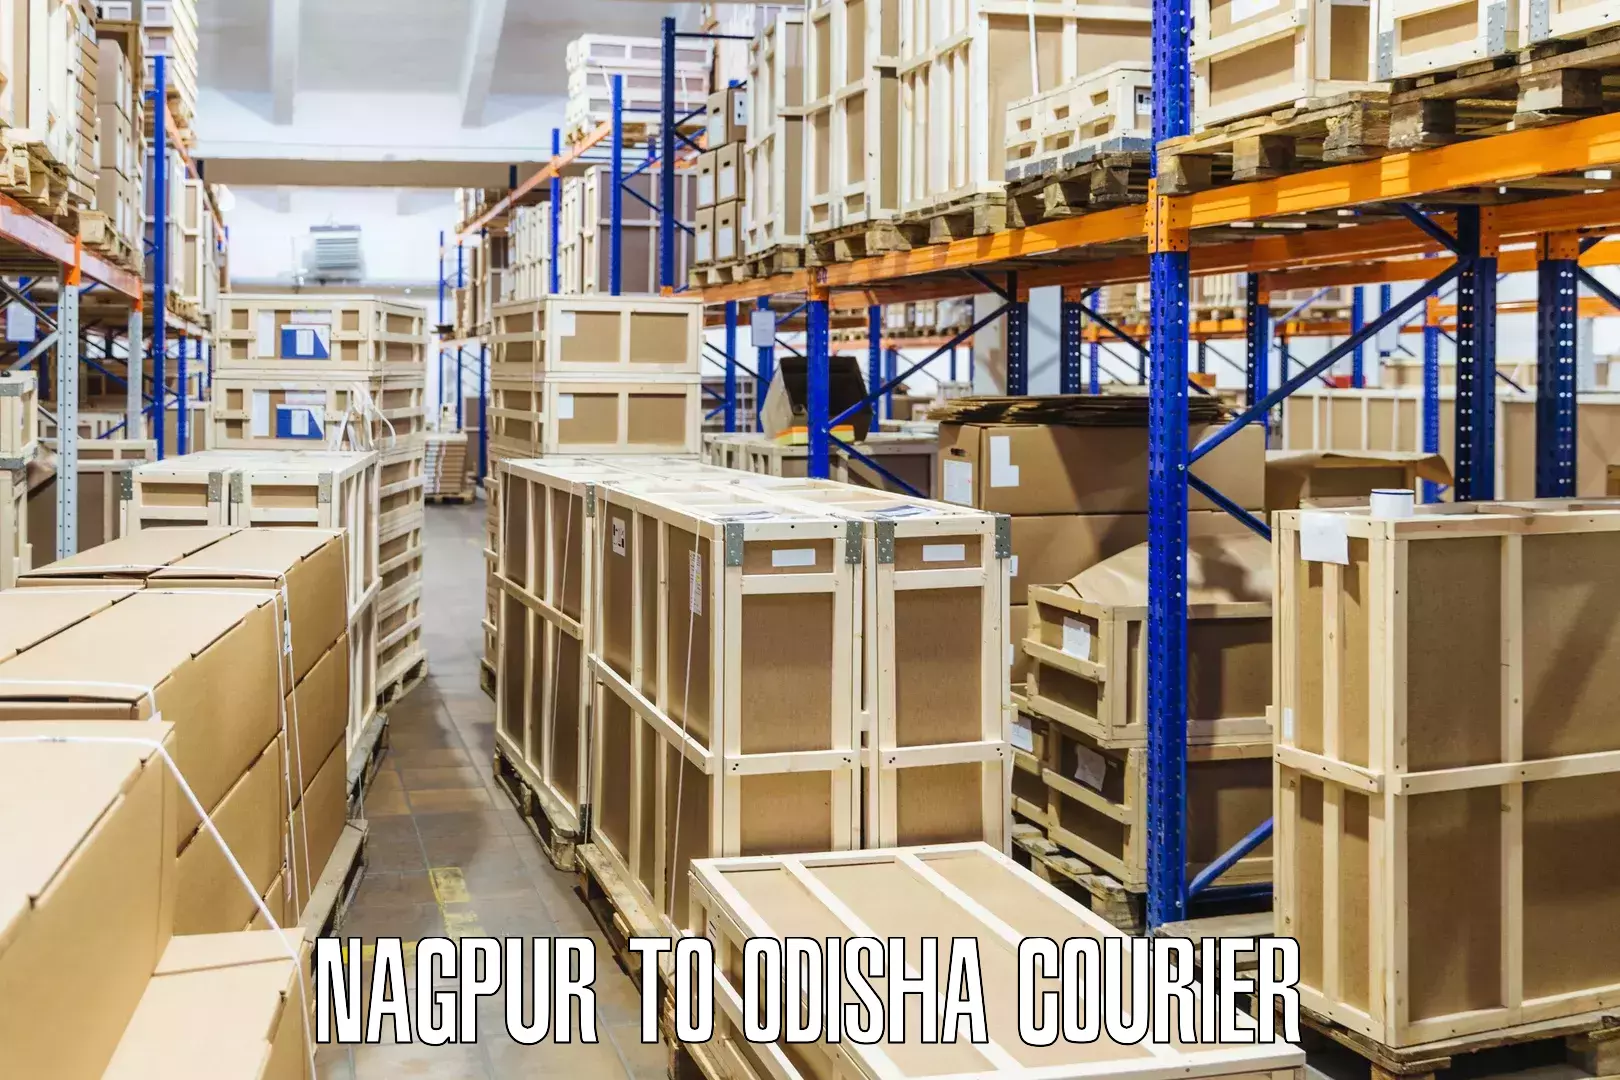 Reliable shipping partners Nagpur to Mohana